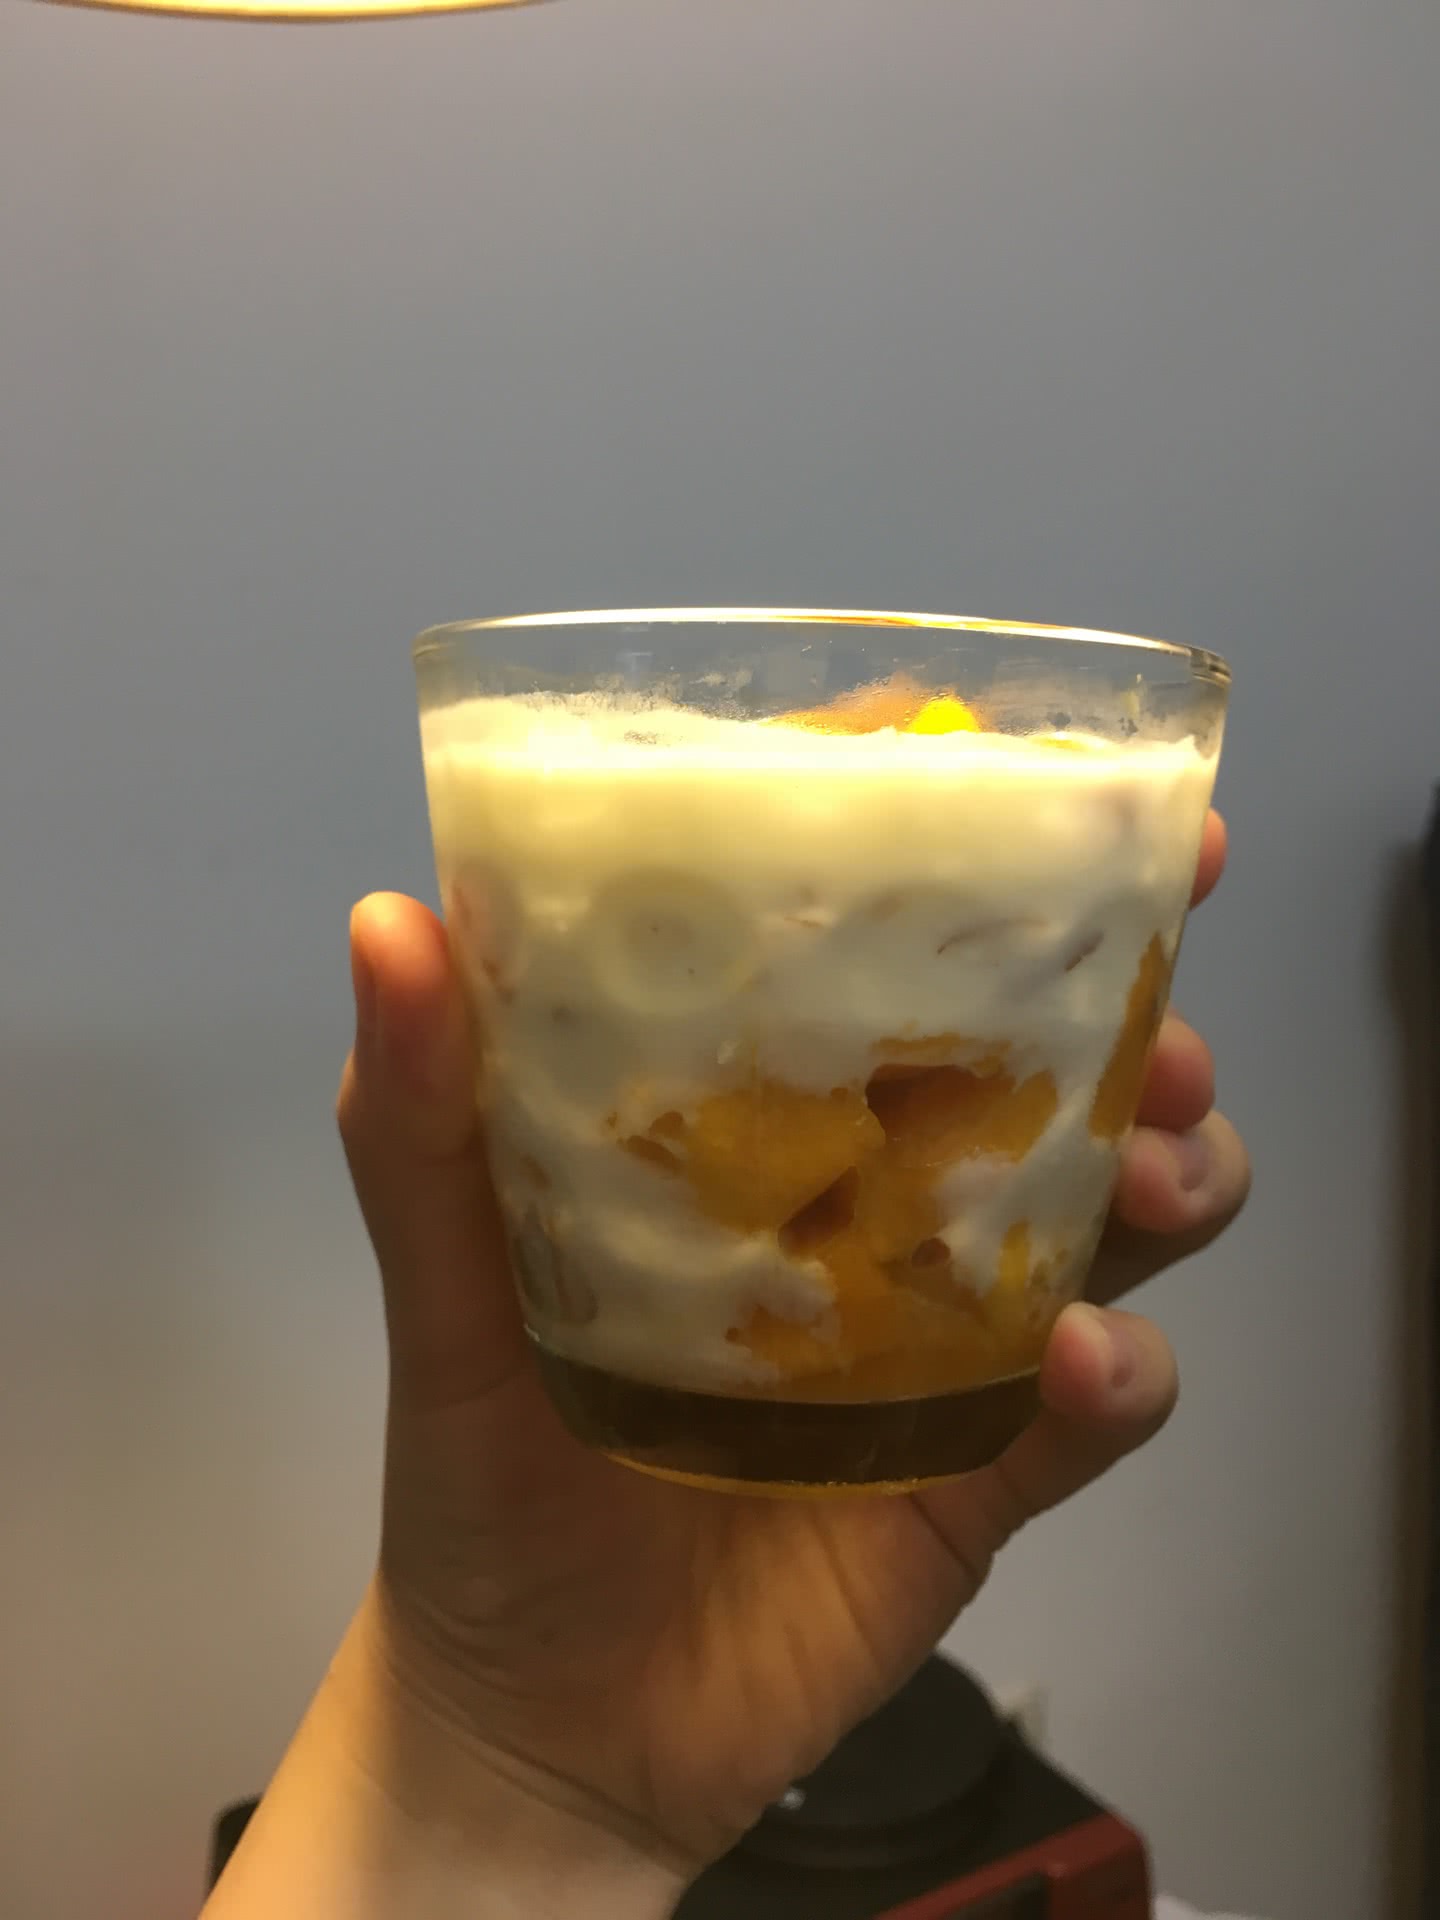 印度坚果酸奶怎么做_印度坚果酸奶的做法_食客祥妈_豆果美食